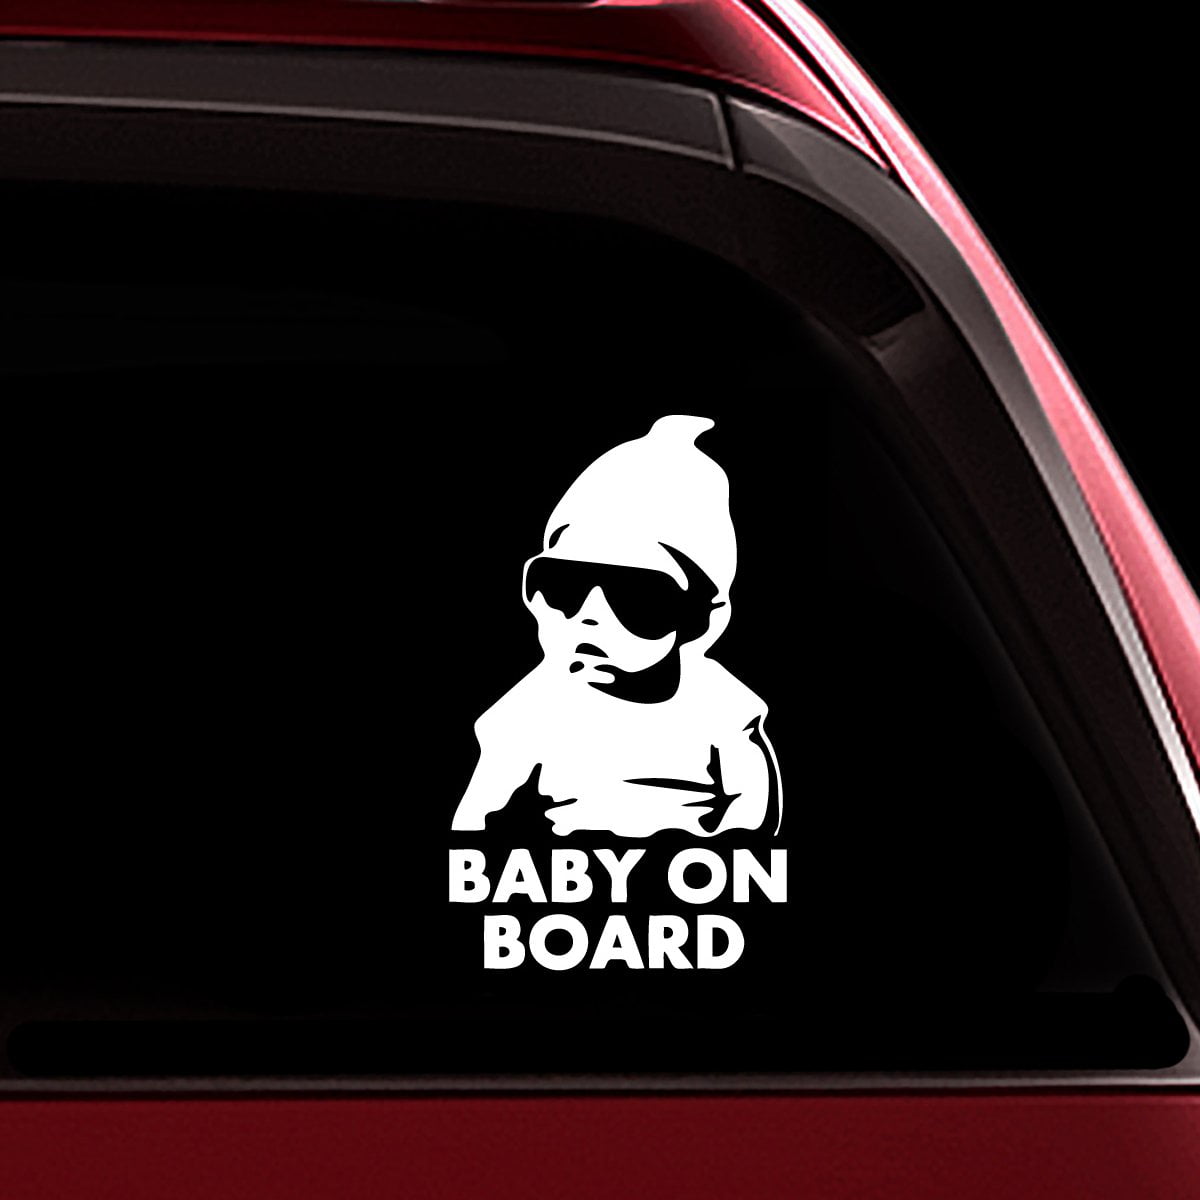 Car Sticker Warning Baby On Board Funny Cute Boy Car Exterior